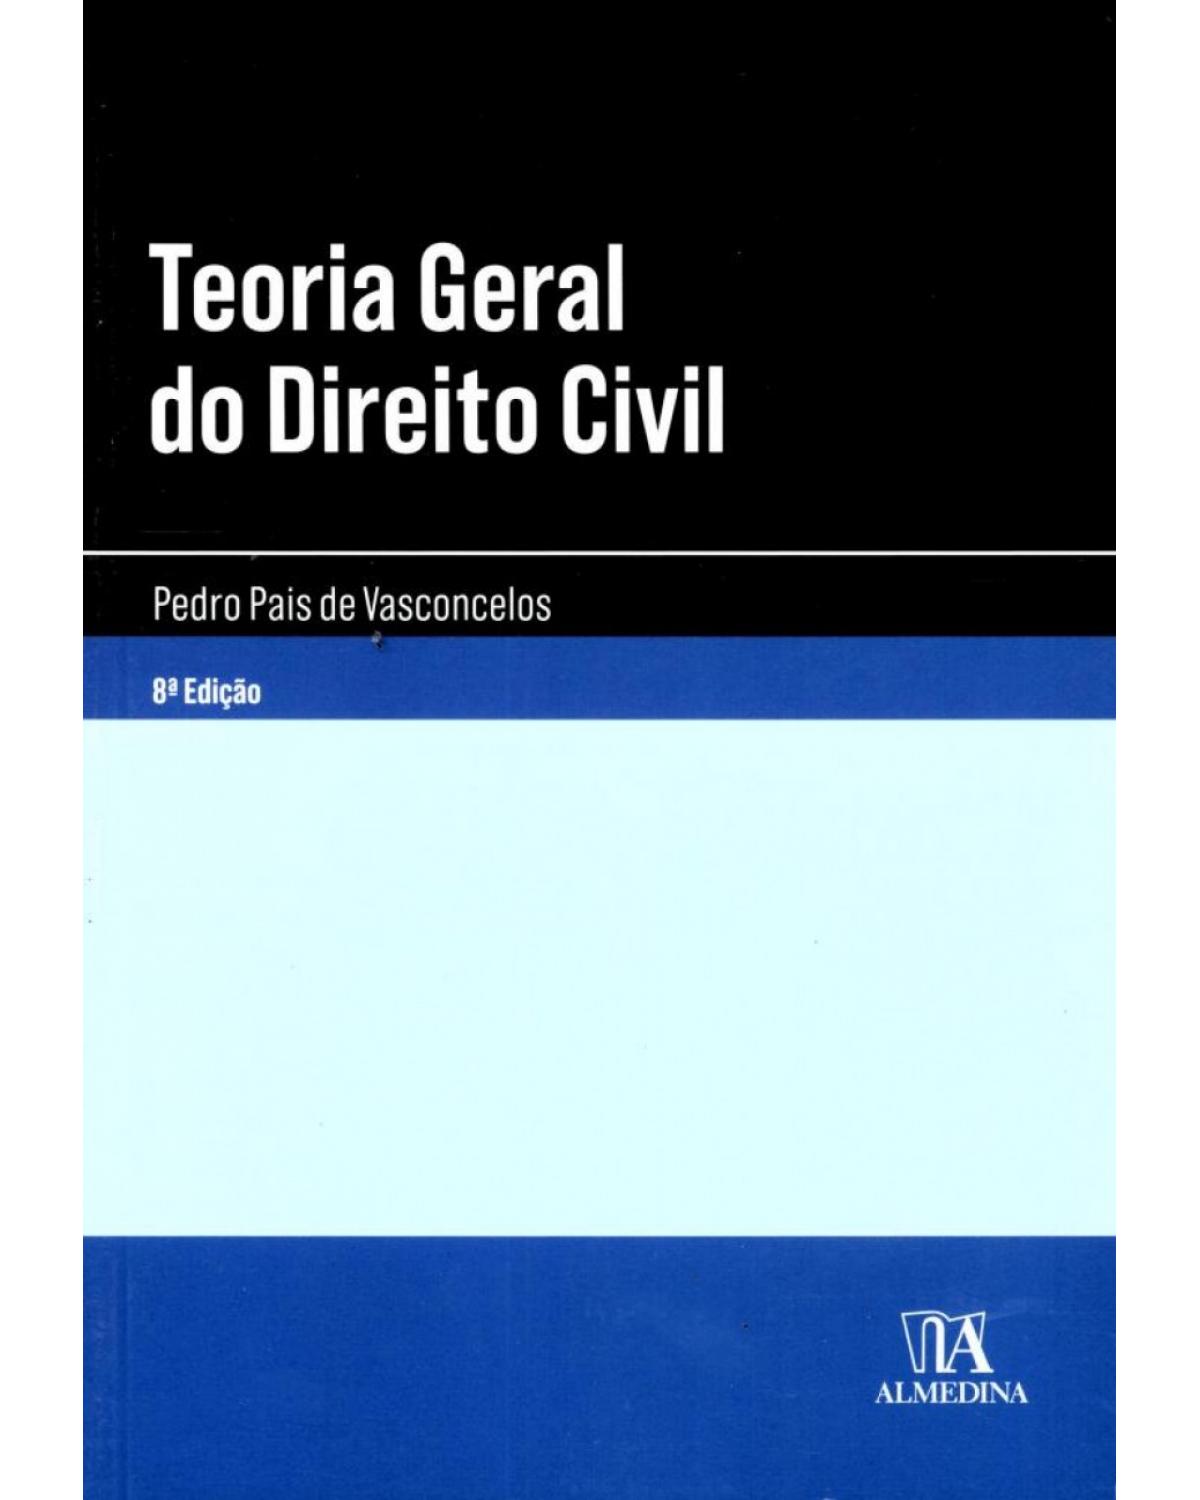 Teoria geral do direito civil - 8ª Edição | 2015